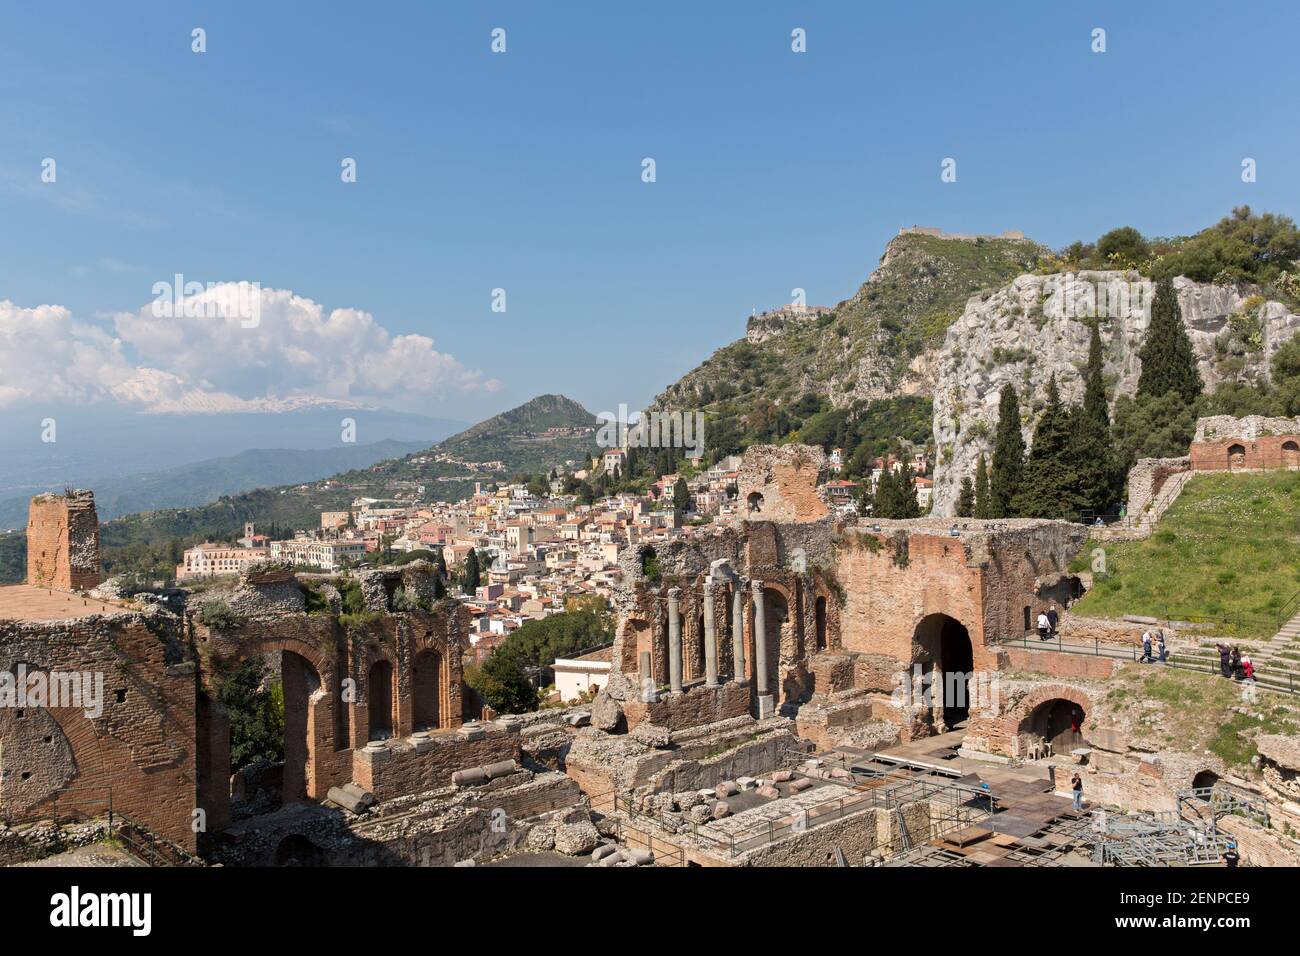 Italien, Sizilien, Taormina, das griechische Theater, mit der Stadt Taormina und dem Ätna im Hintergrund. Stockfoto